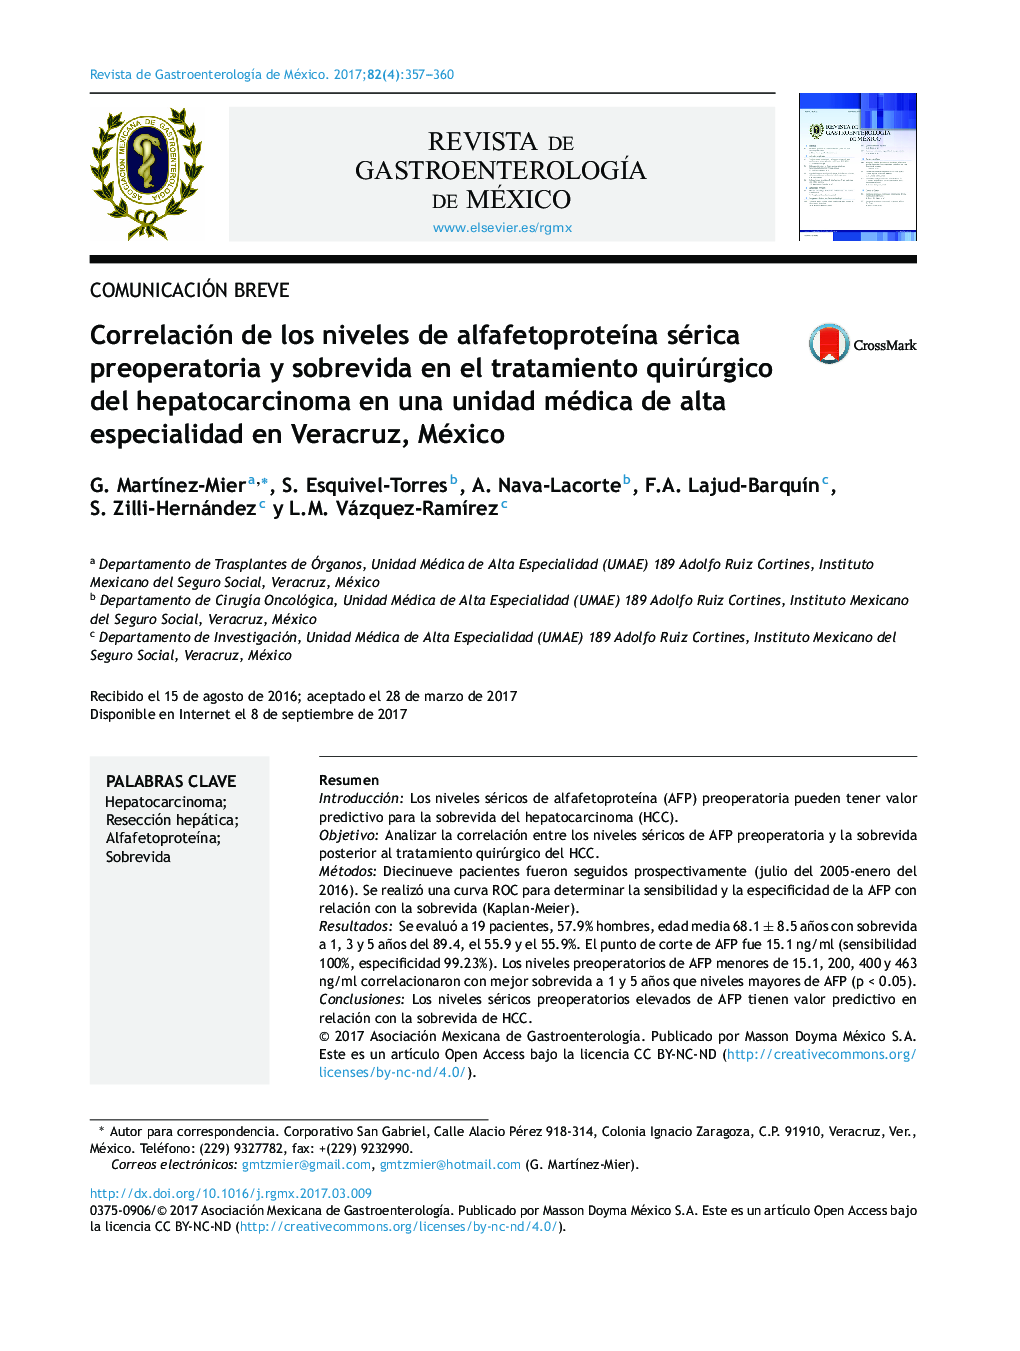 Correlación de los niveles de alfafetoproteÃ­na sérica preoperatoria y sobrevida en el tratamiento quirúrgico del hepatocarcinoma en una unidad médica de alta especialidad en Veracruz, México